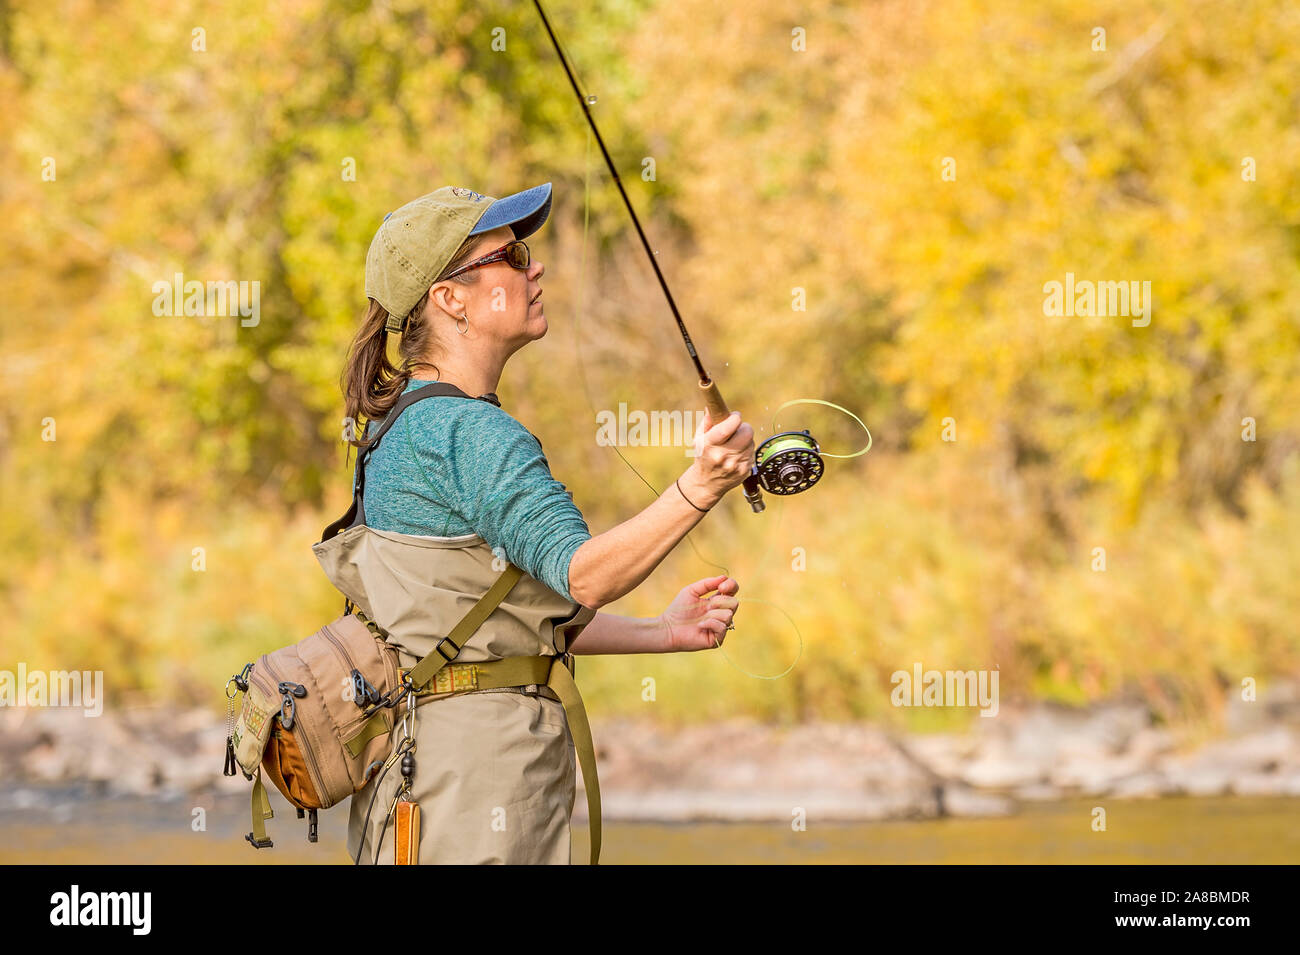 Une femme sur les poissons voler Powder River sur un après-midi d'automne ensoleillé. Banque D'Images